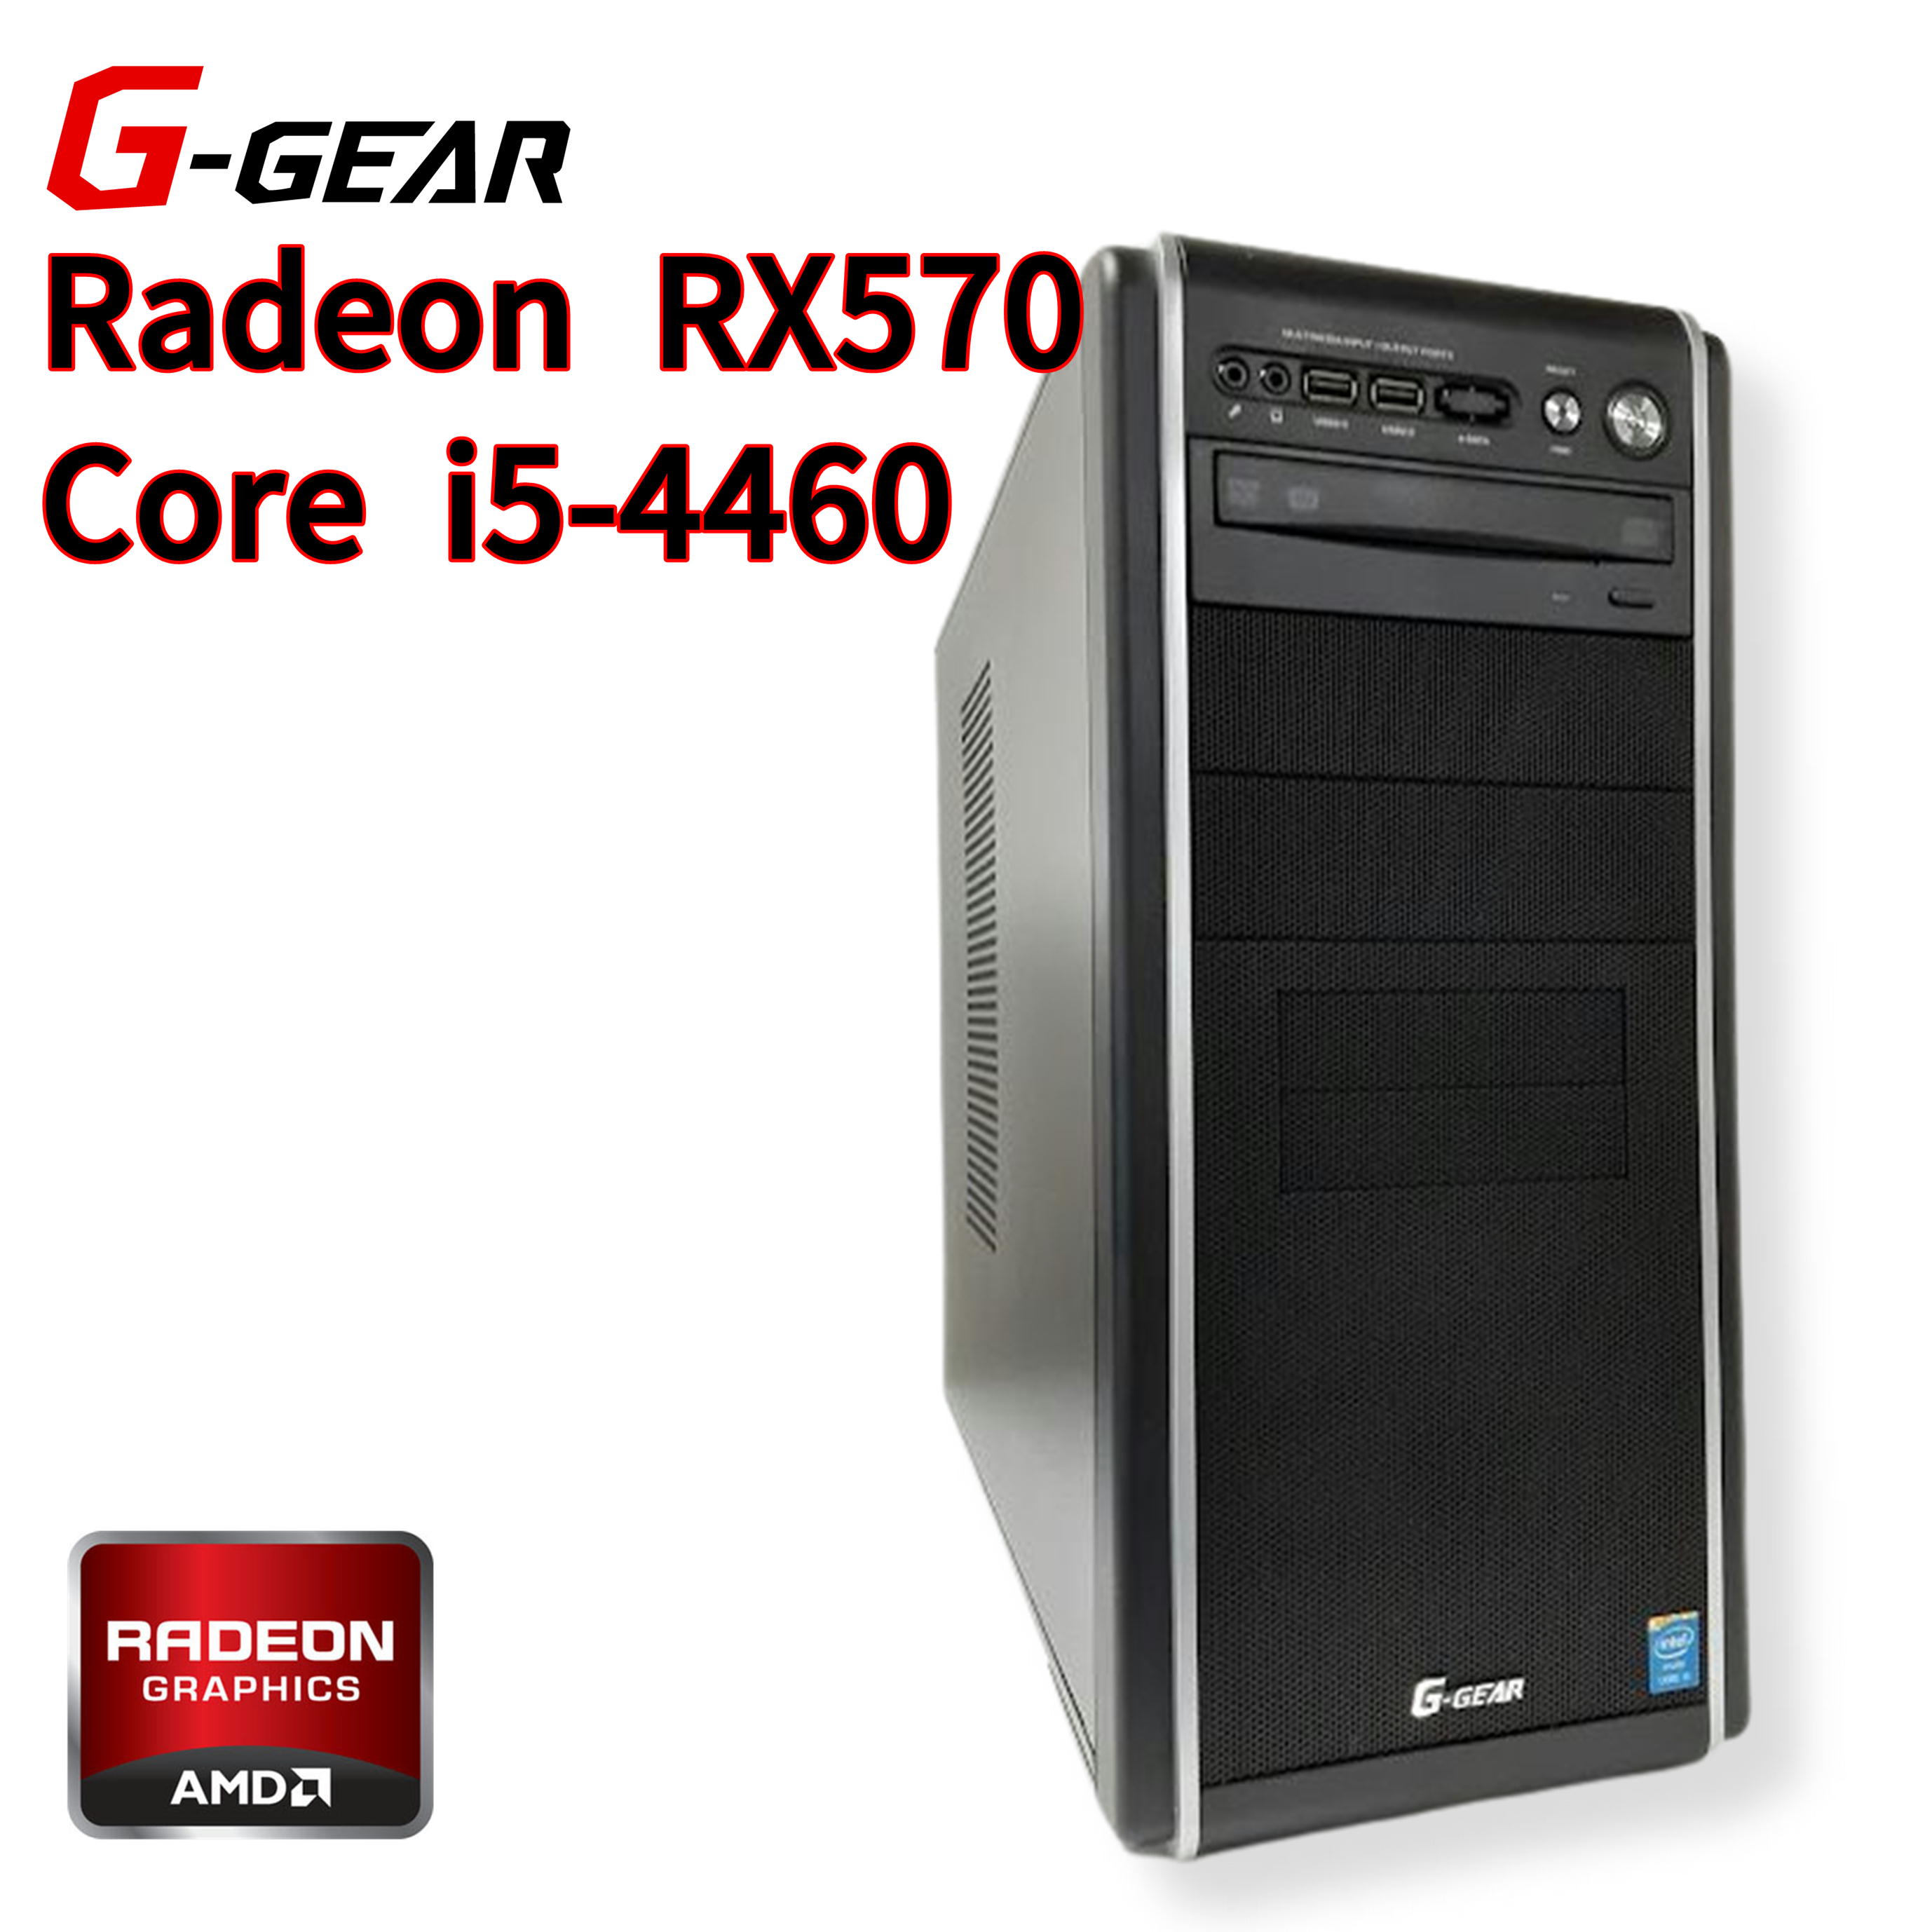 Radeon RX570   Core i5-4460   8GB   SSD 256GB   HDD 500GB   Windows 10